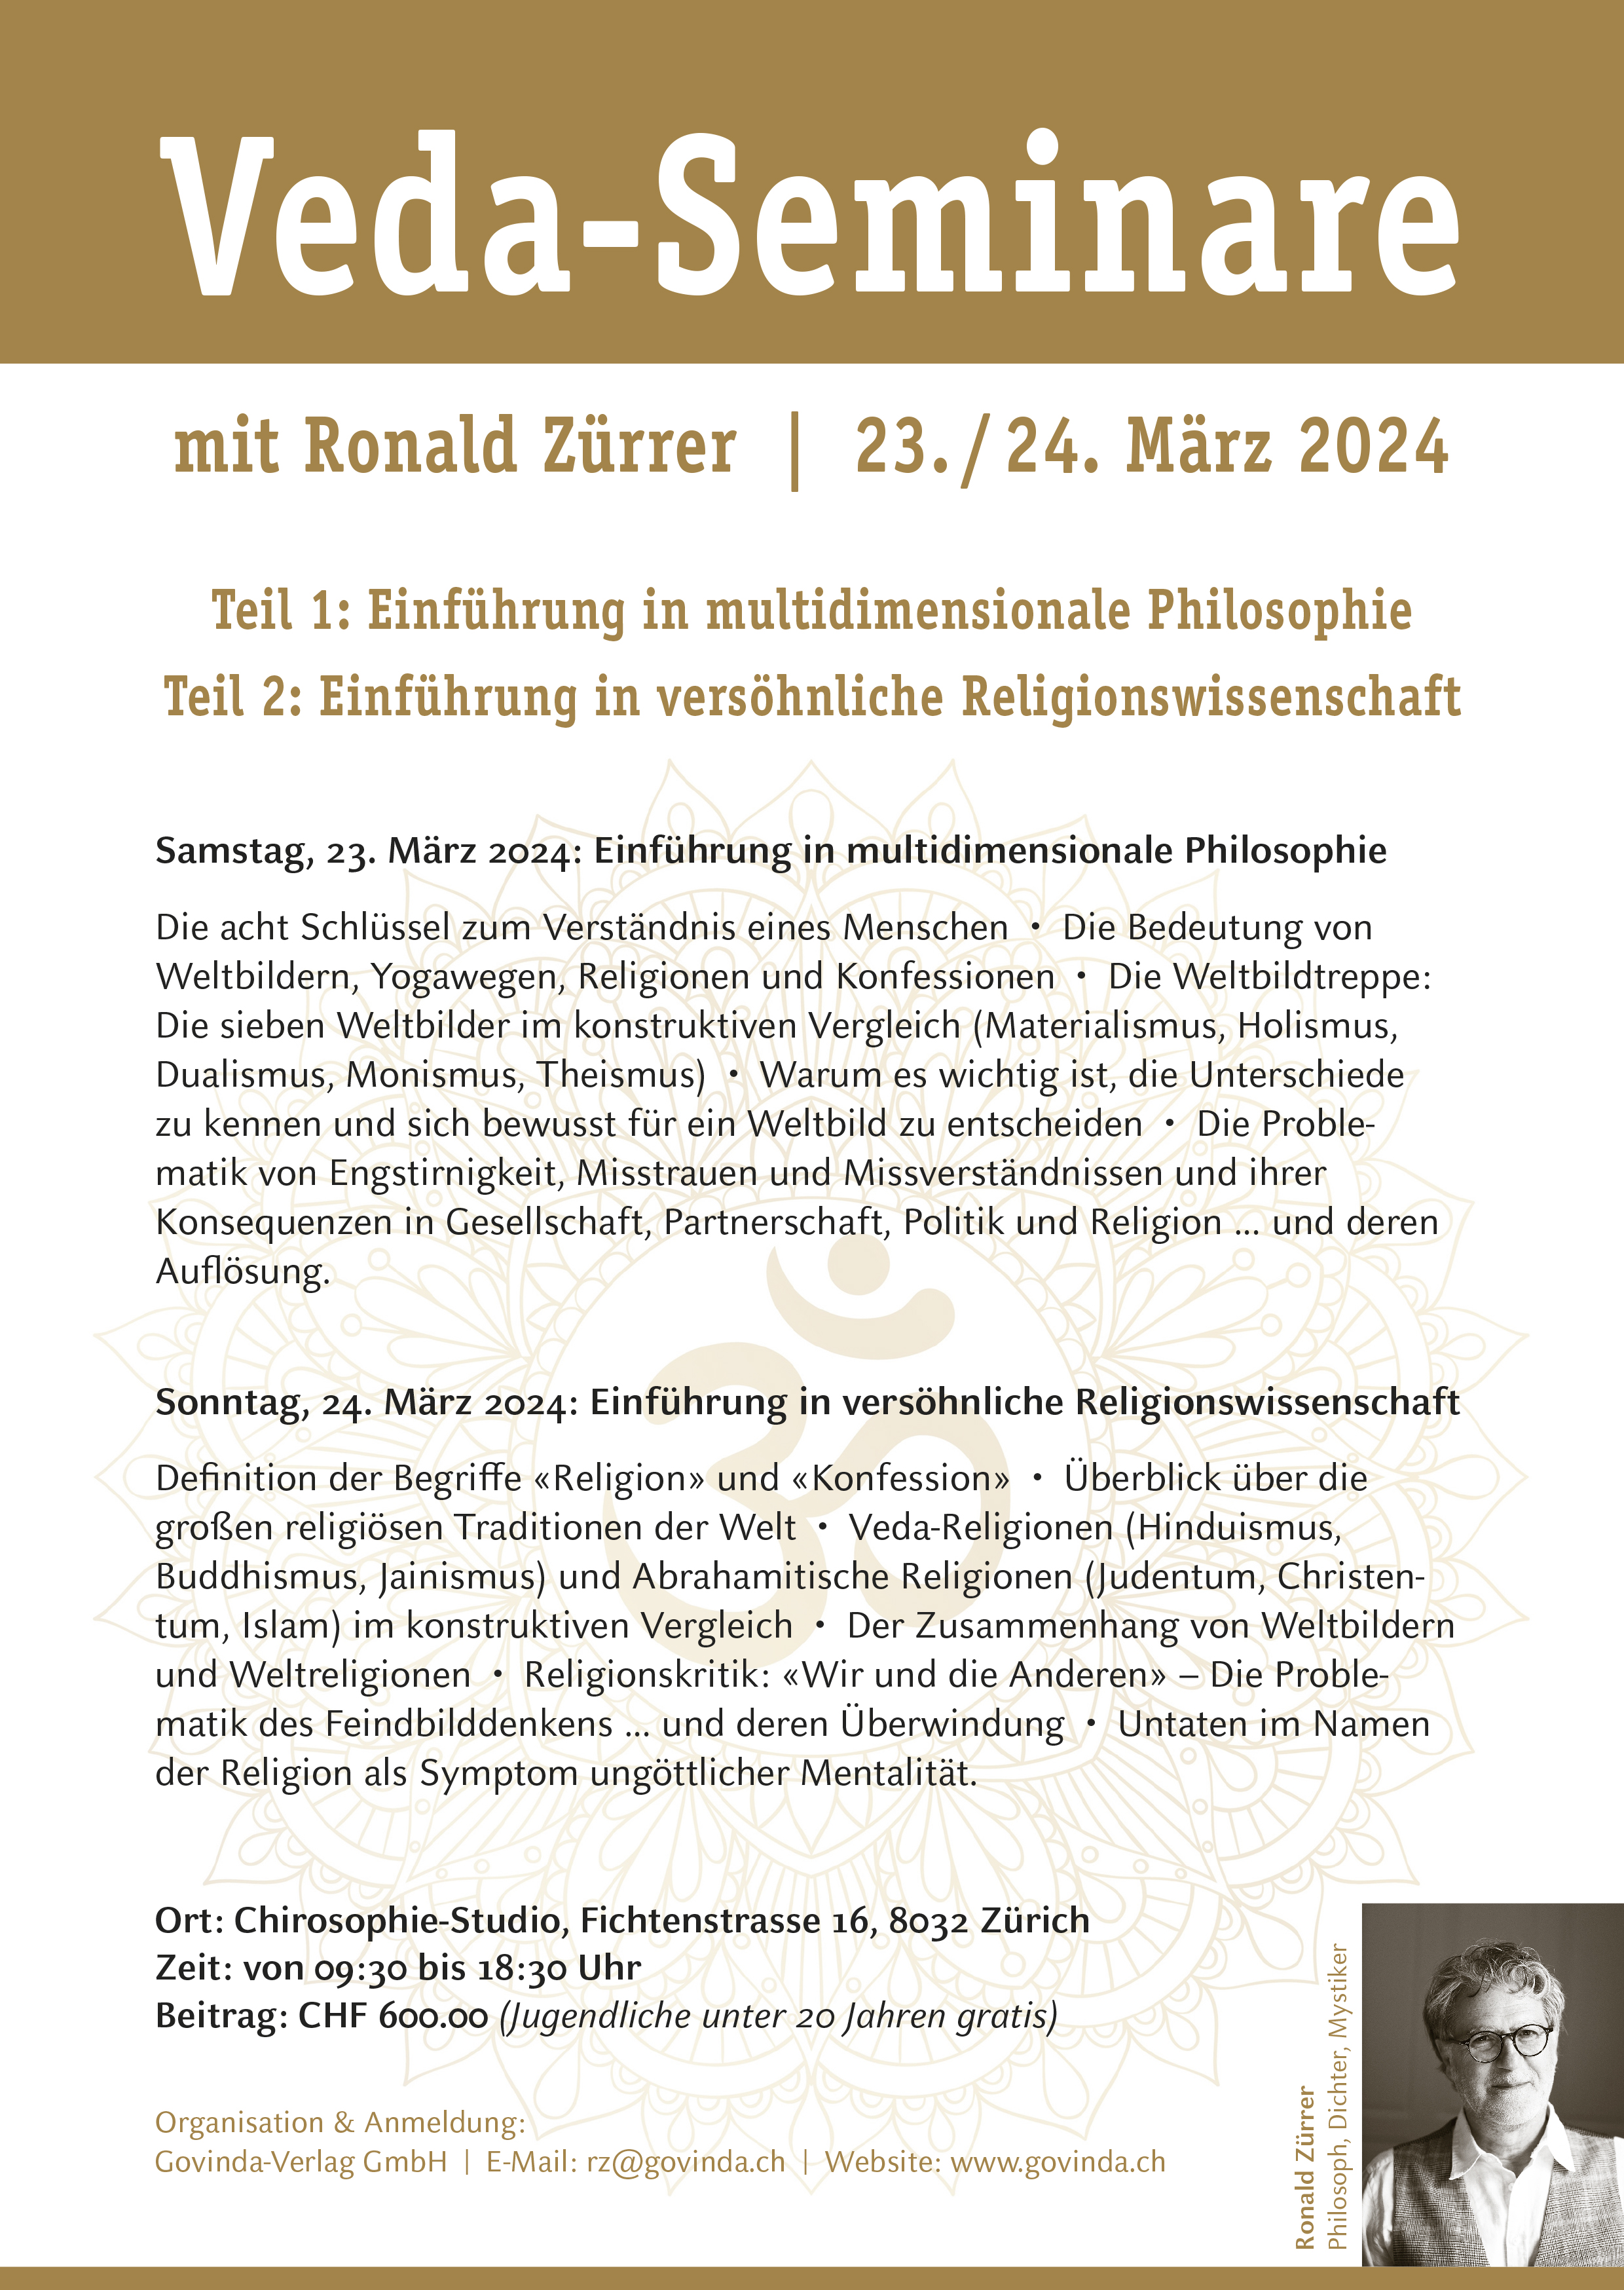 Veda-Seminar: Multidimensionale Philosophie und Religionswissenschaft